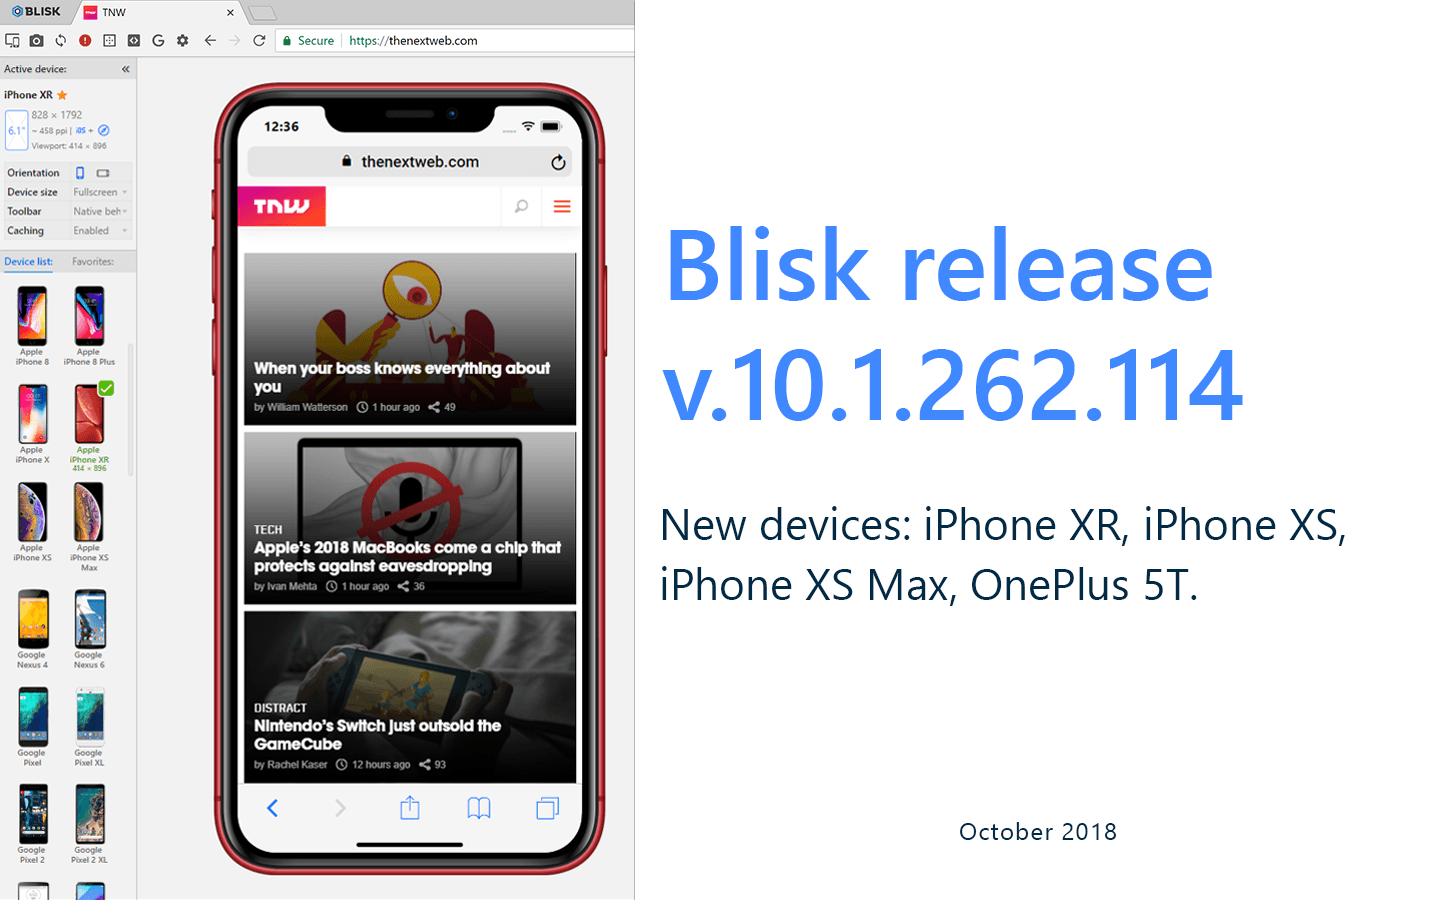 Blisk release 10.1.262.144